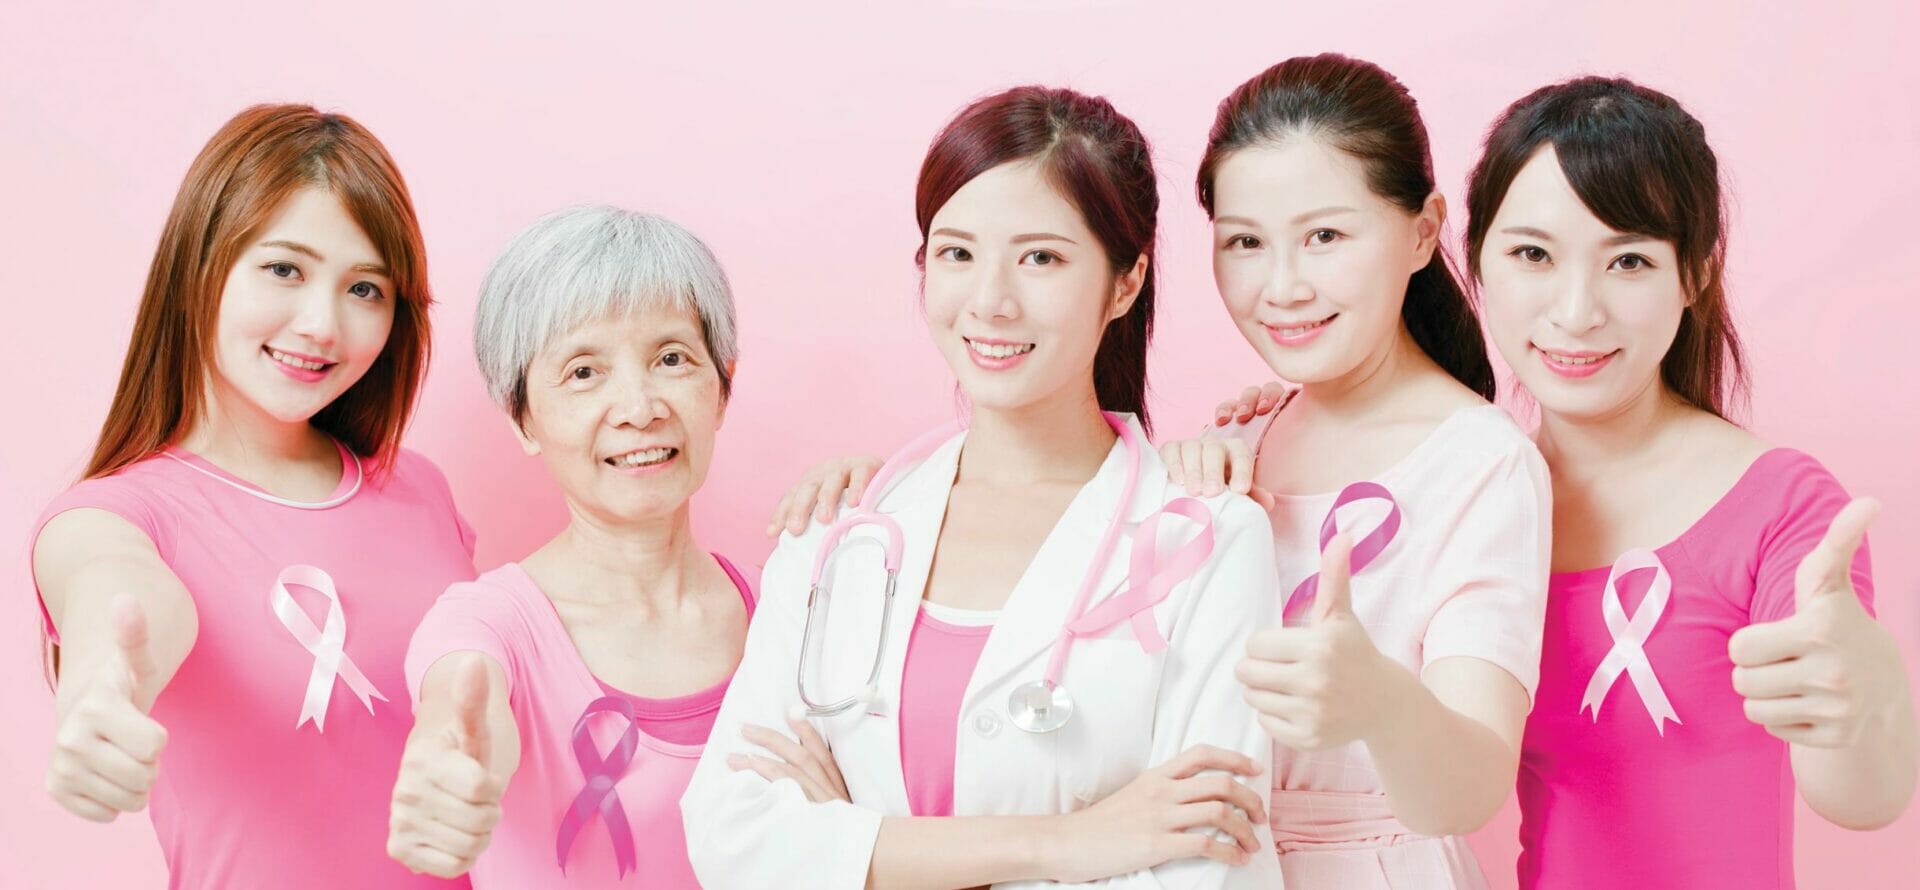 所有人都應該認清有關乳癌的 6 個事實